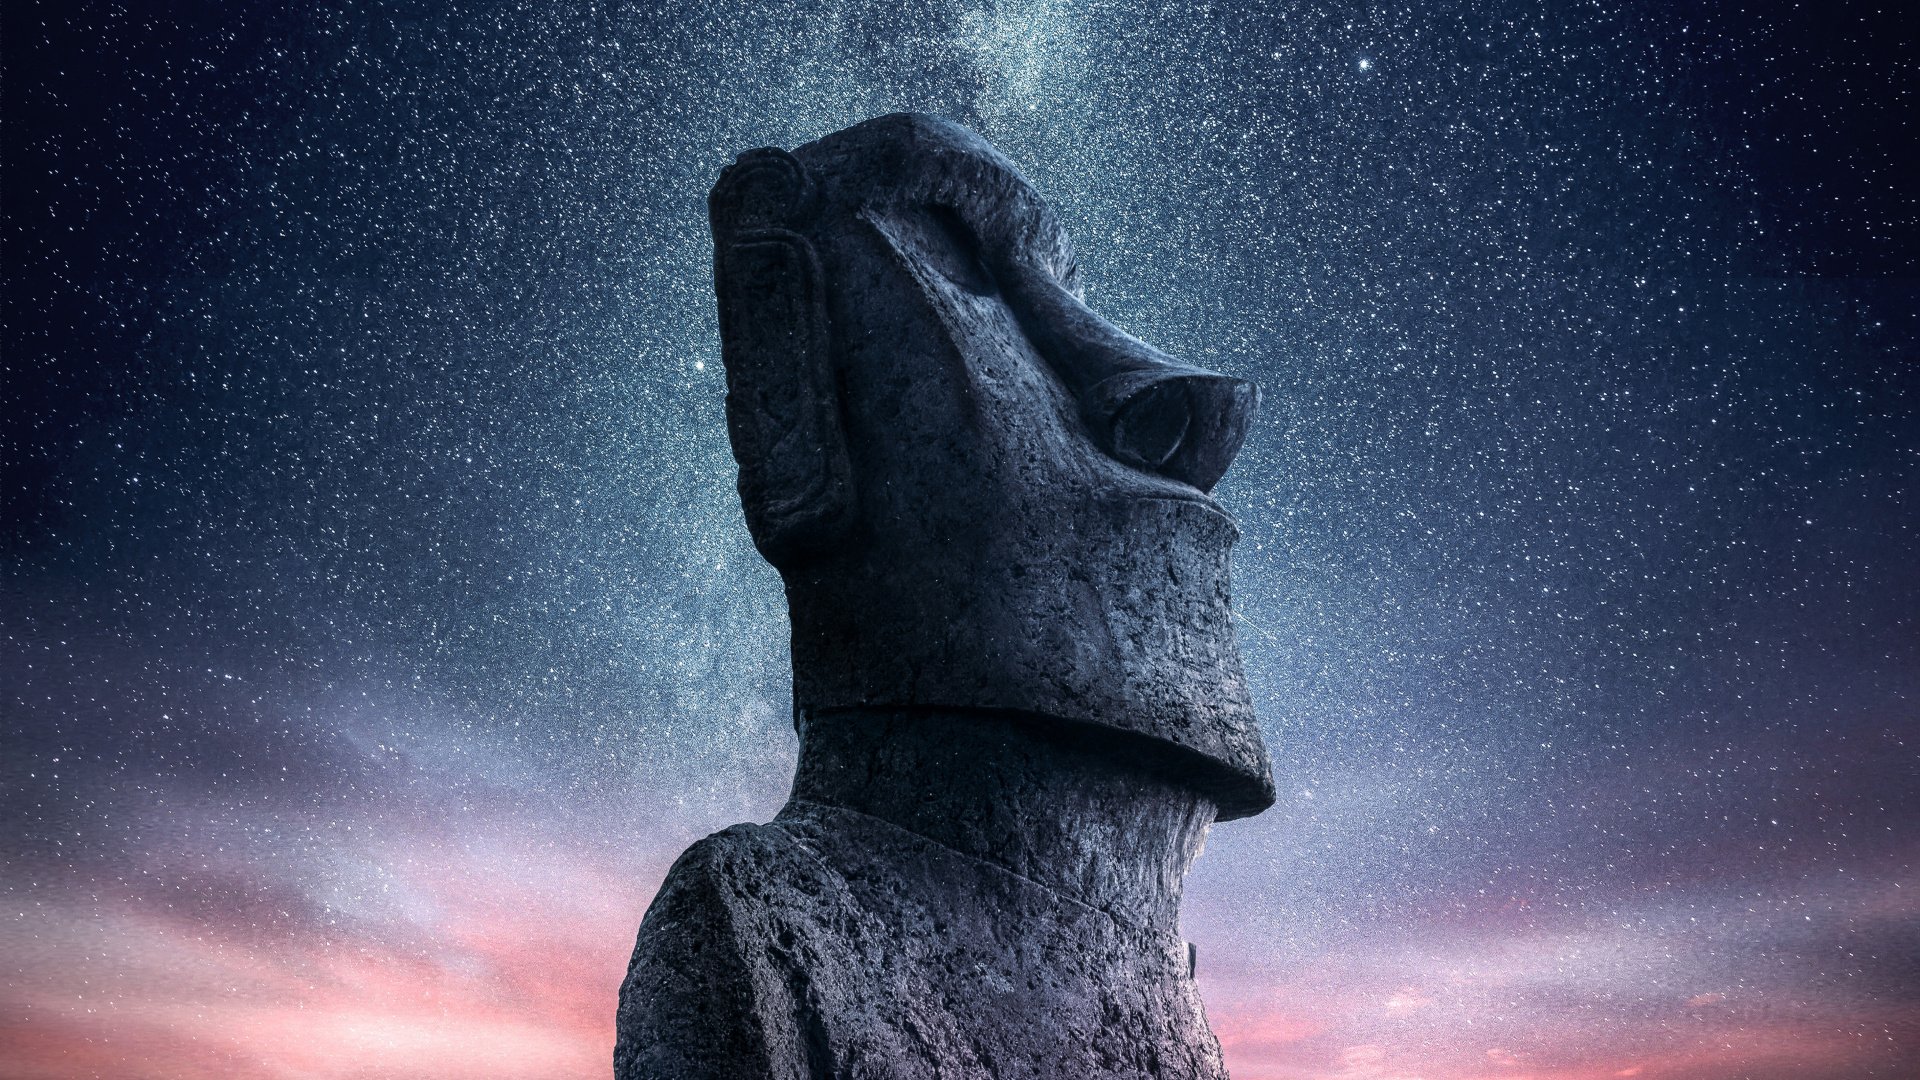 Moai Statue, Easter Island [1920x1080]